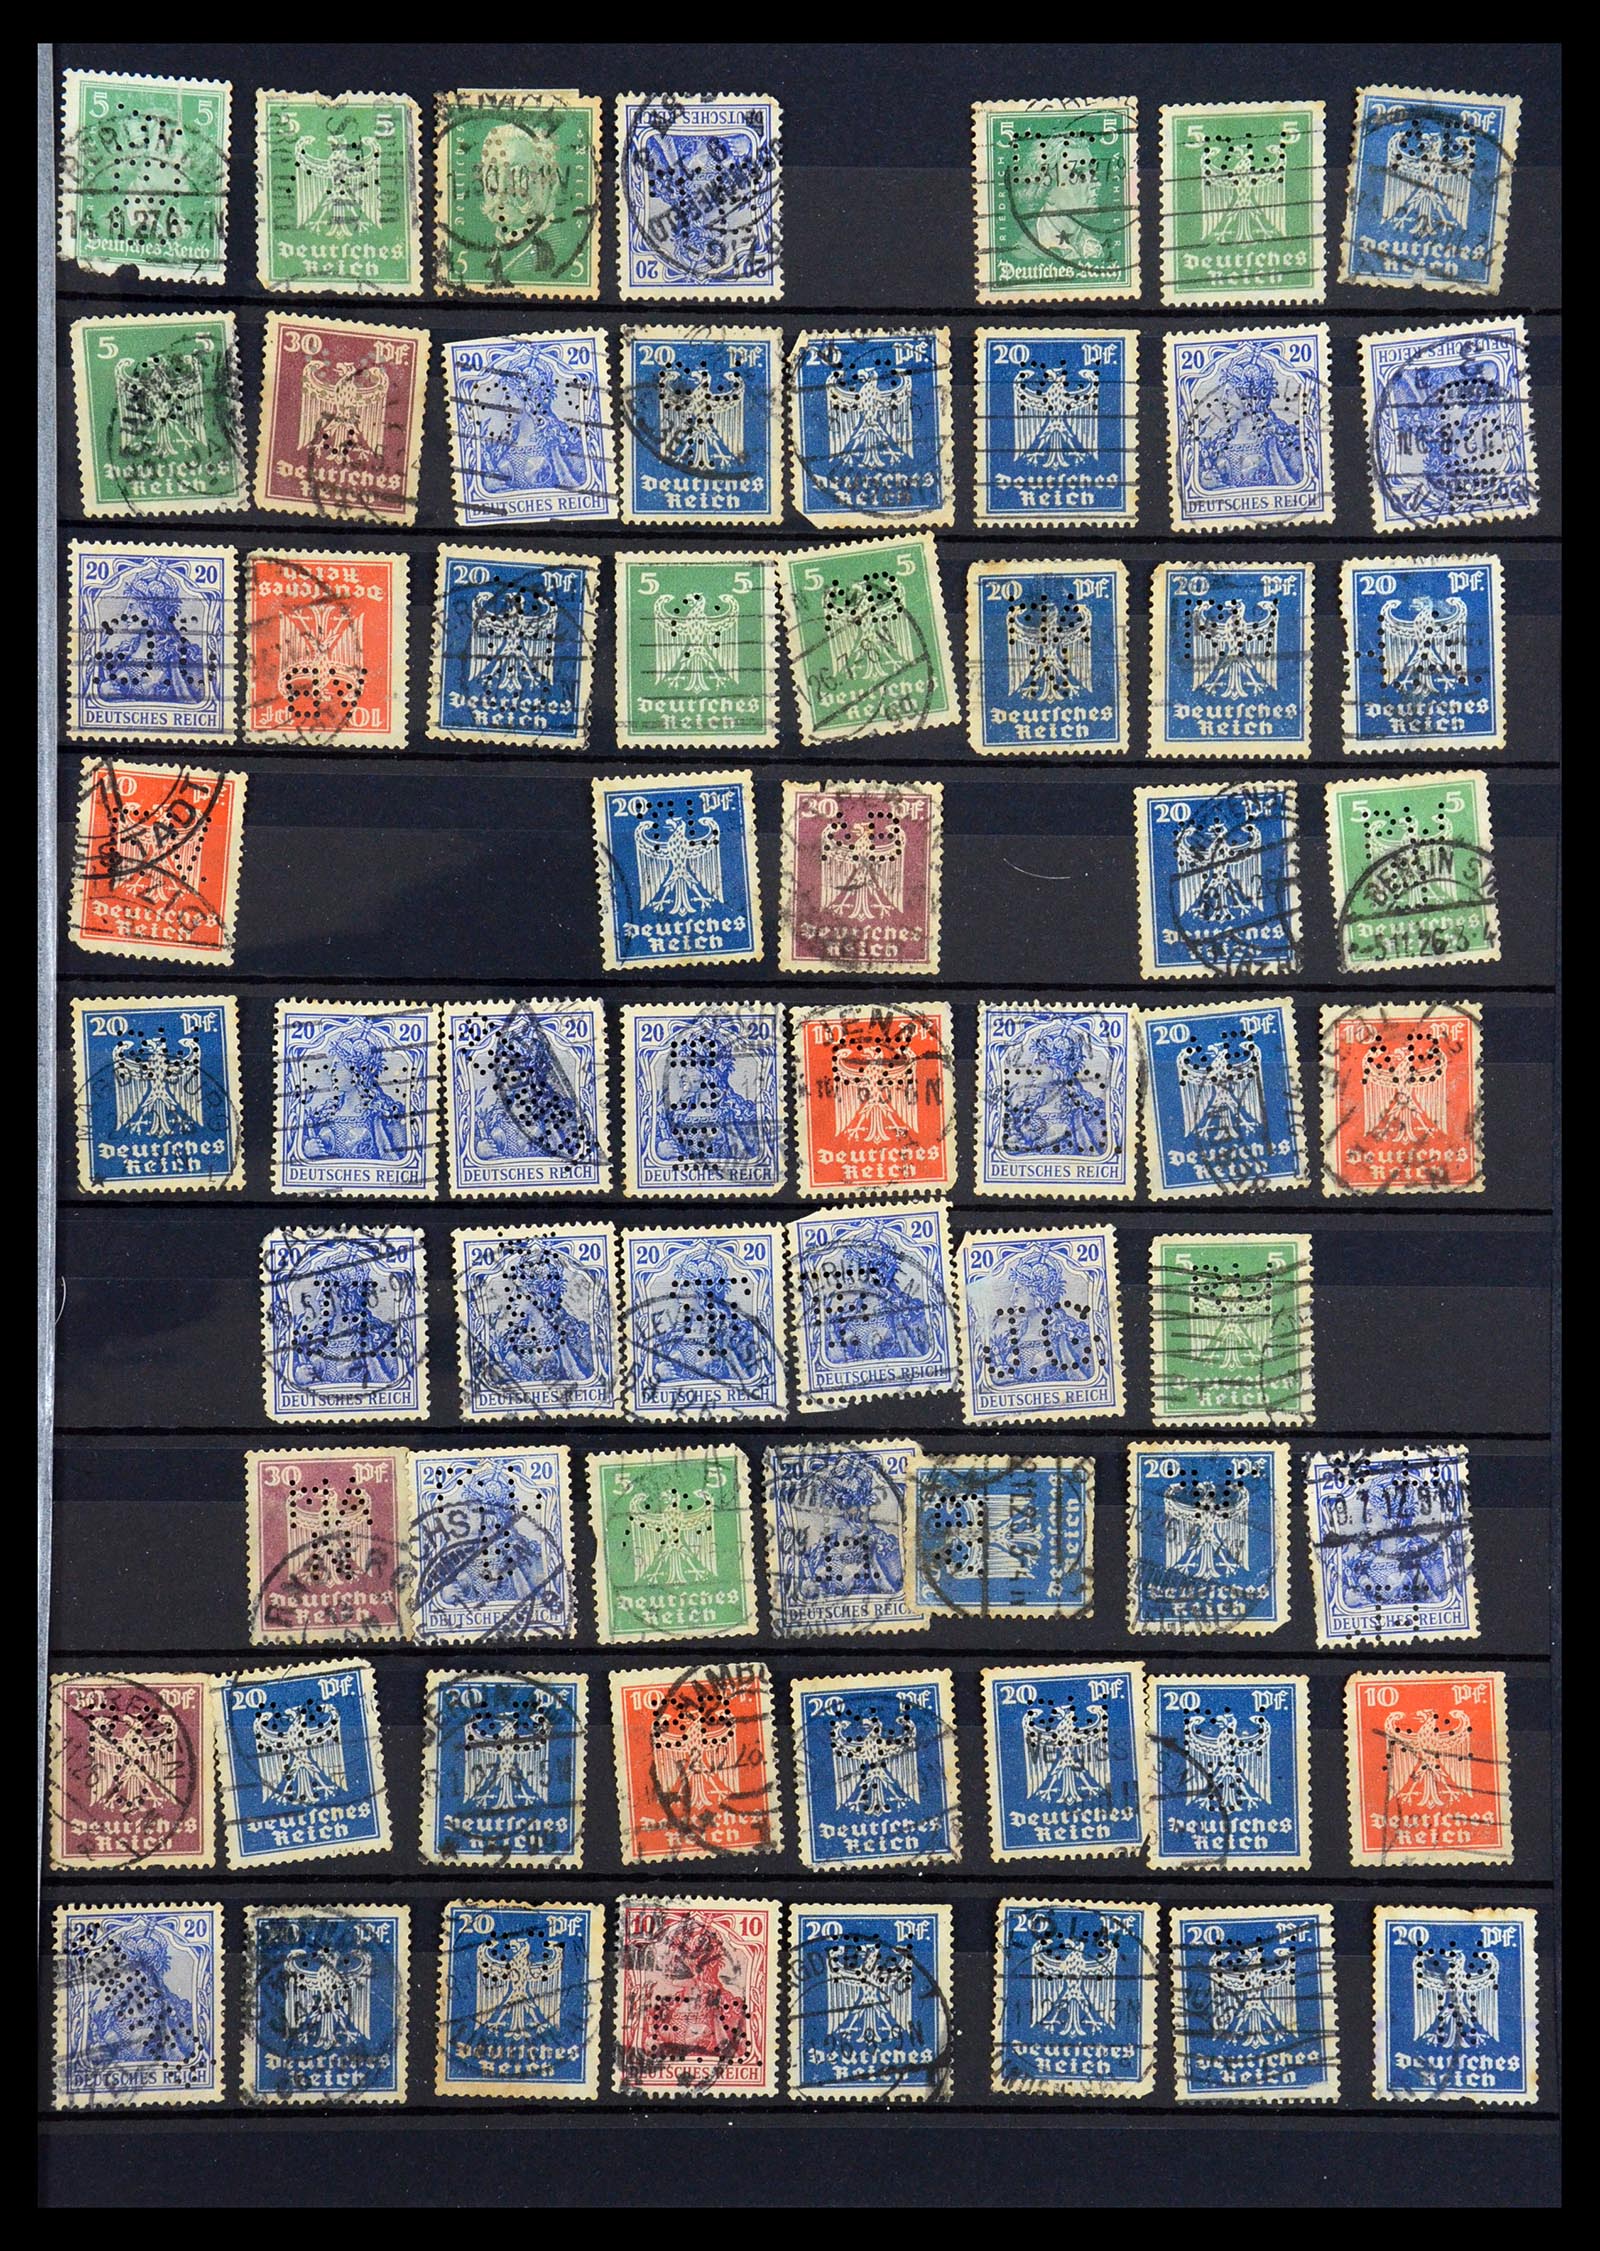 35183 009 - Stamp Collection 35183 German Reich perfins 1880-1945.